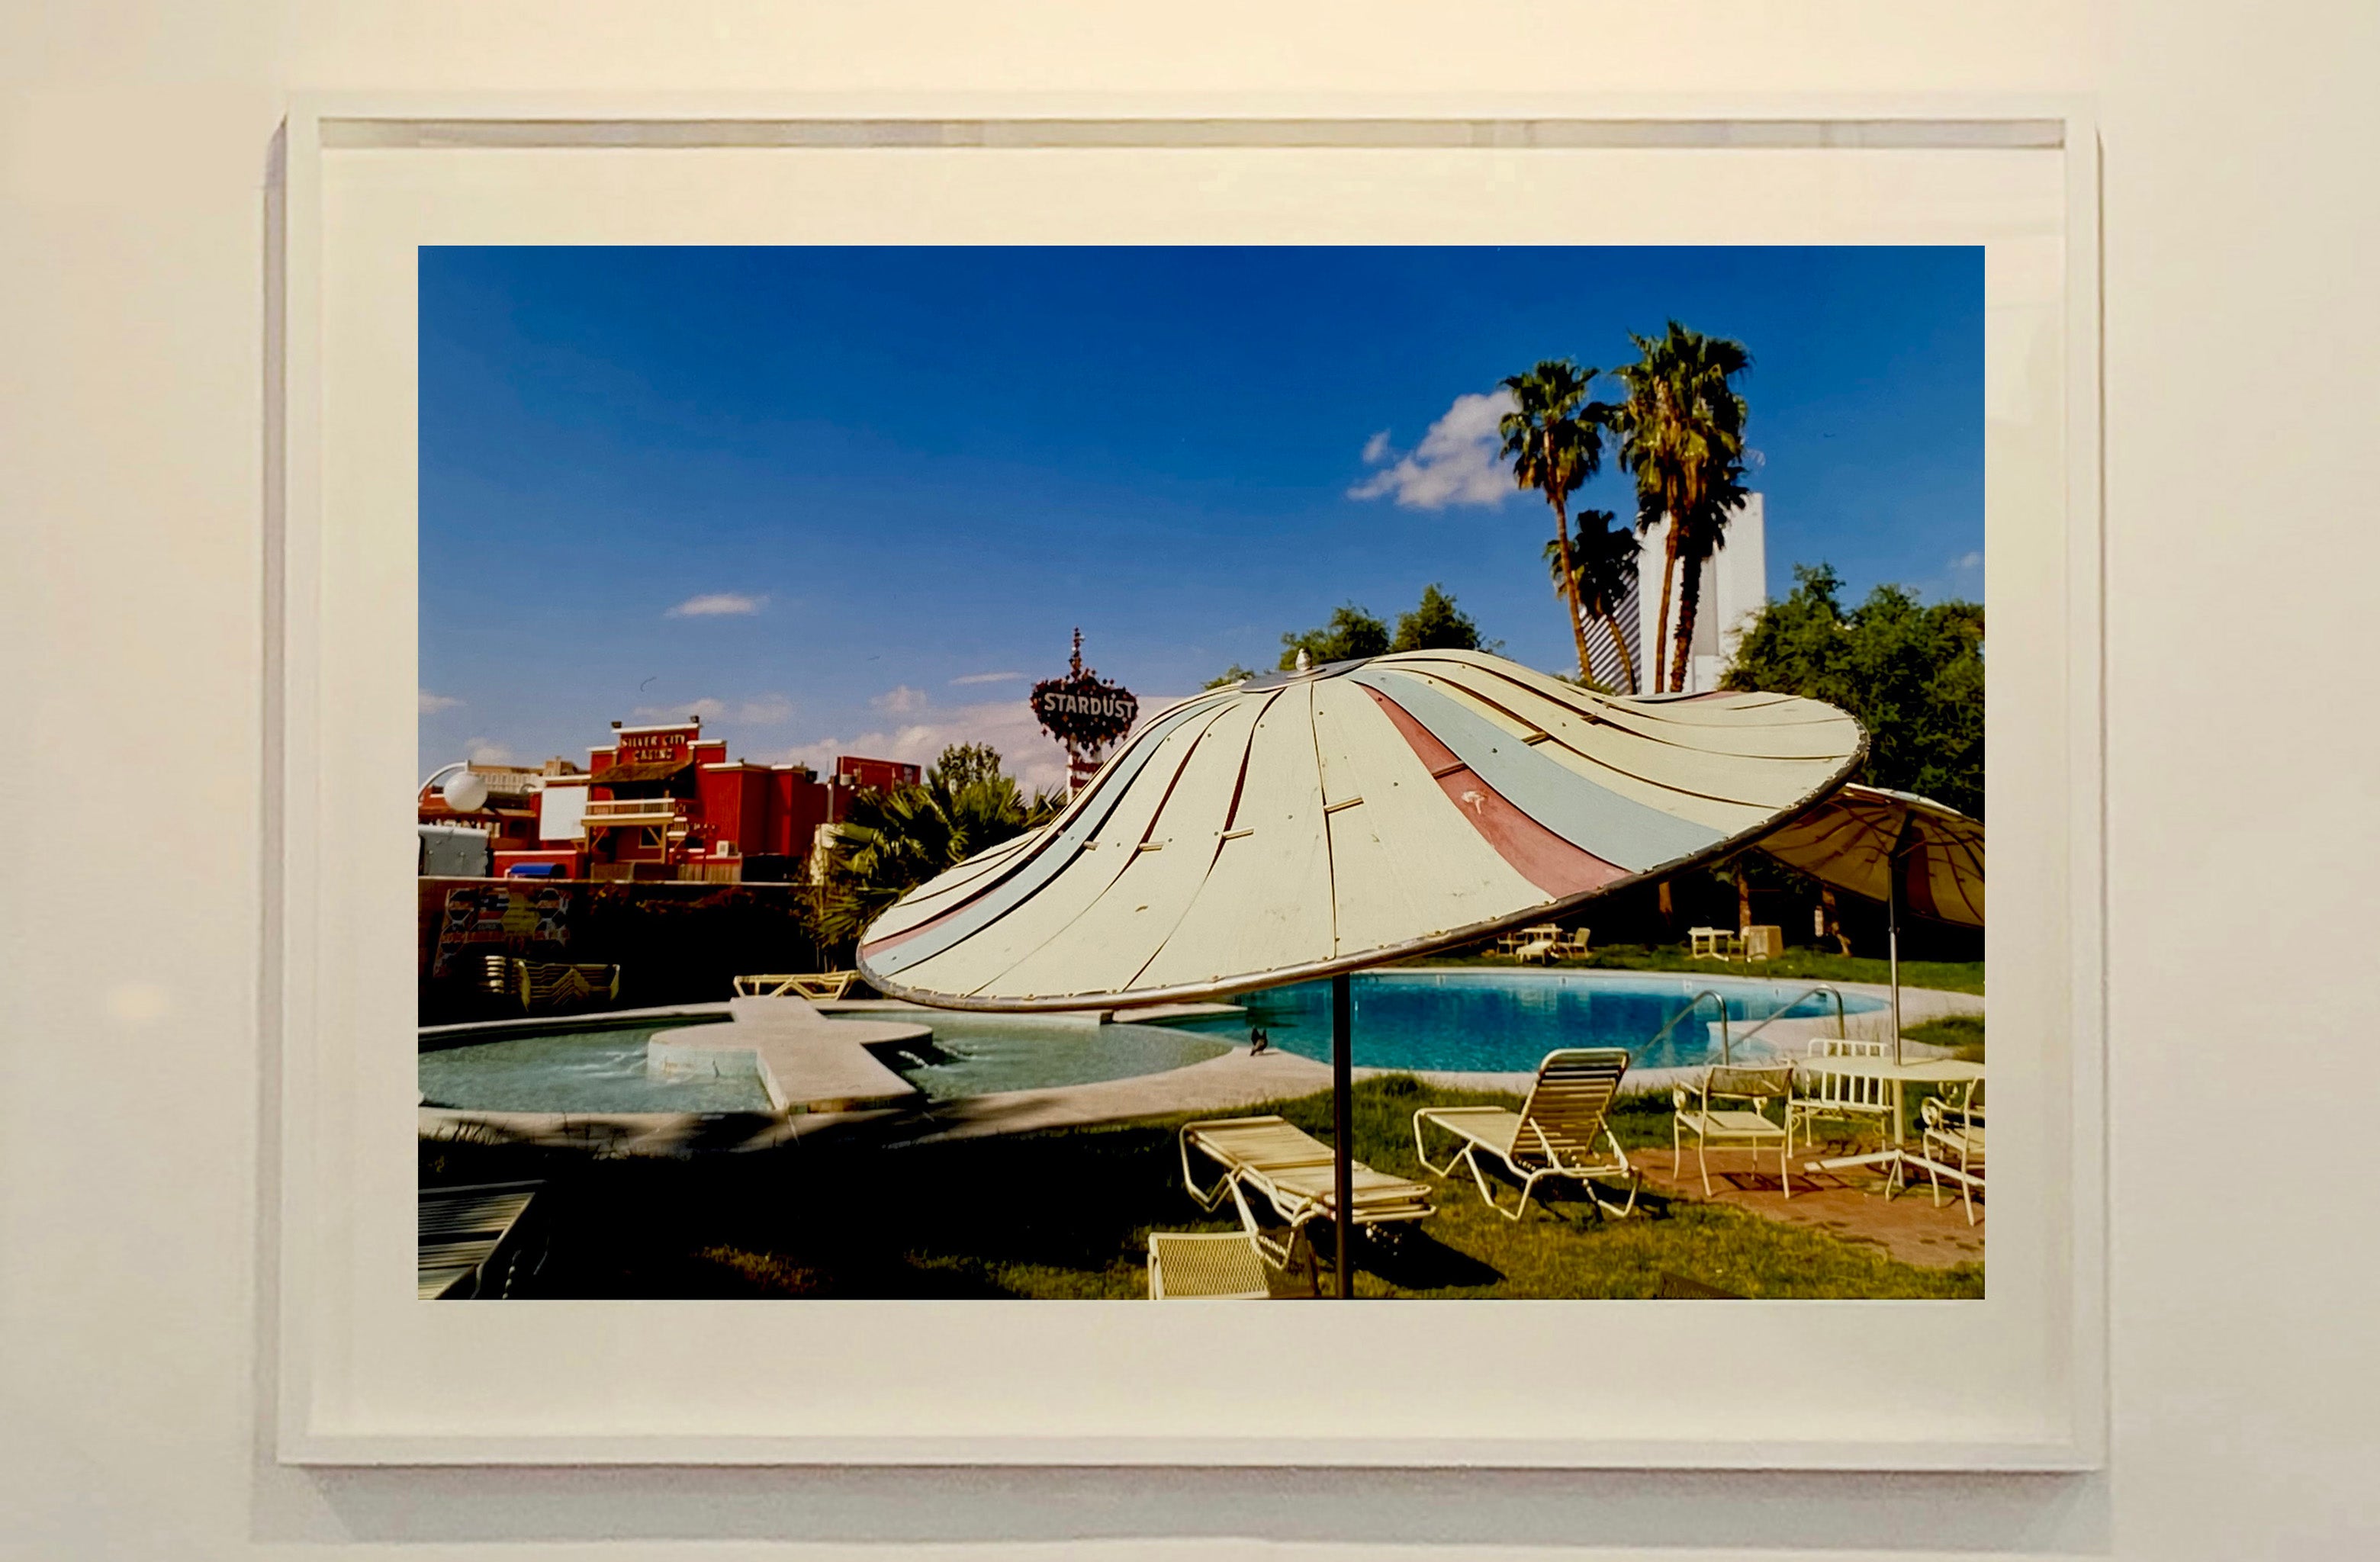 Pracht Bevestigen Verbieden Poolside Parasol, El Morocco Motel, Las Vegas, Nevada, 2001 - Richard Heeps